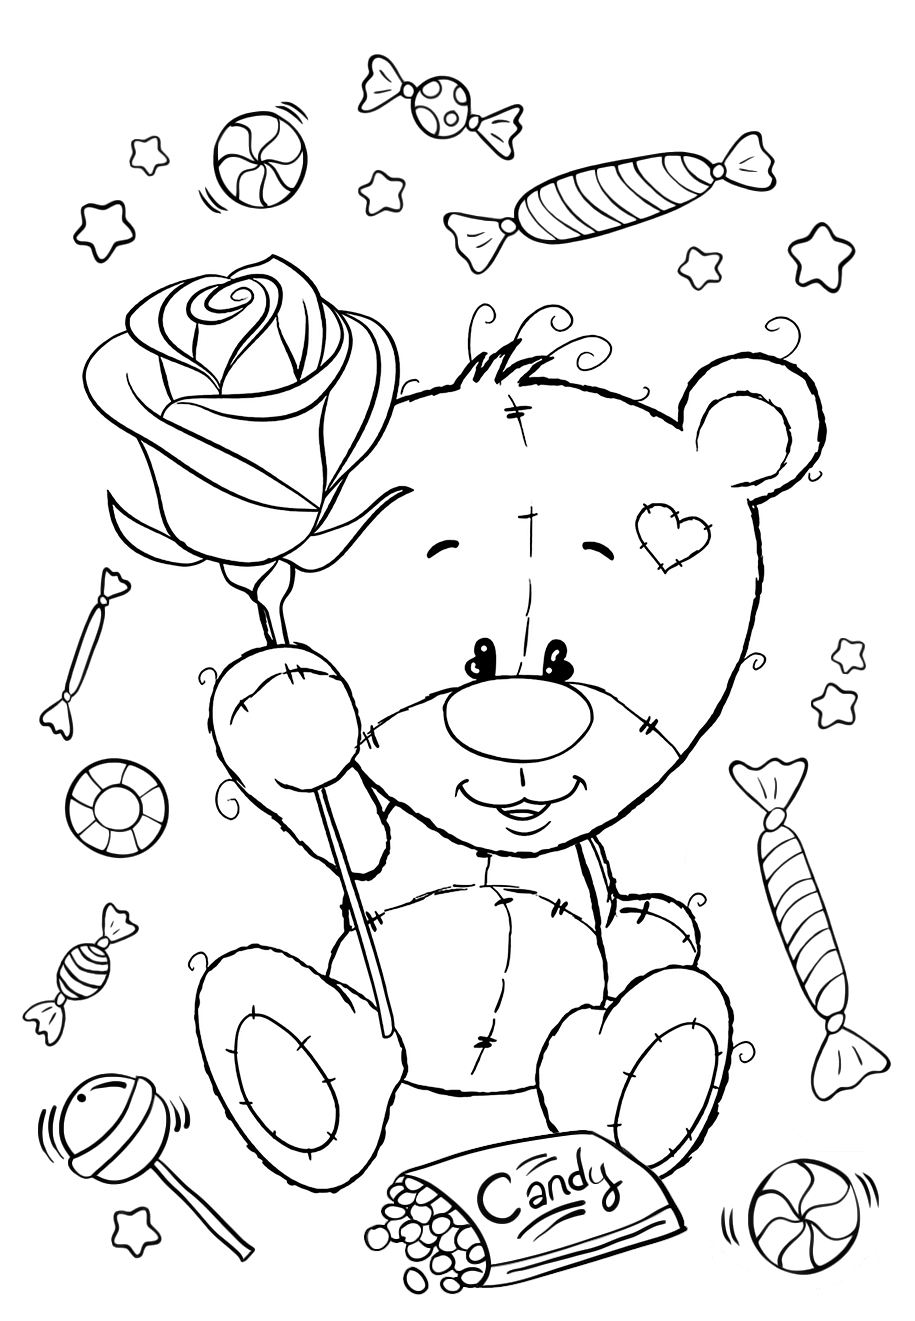 Раскраски для девочек «Милашки» Мишка Тедди с розой, чтобы бесплатно распечатать в хорошем качестве А4